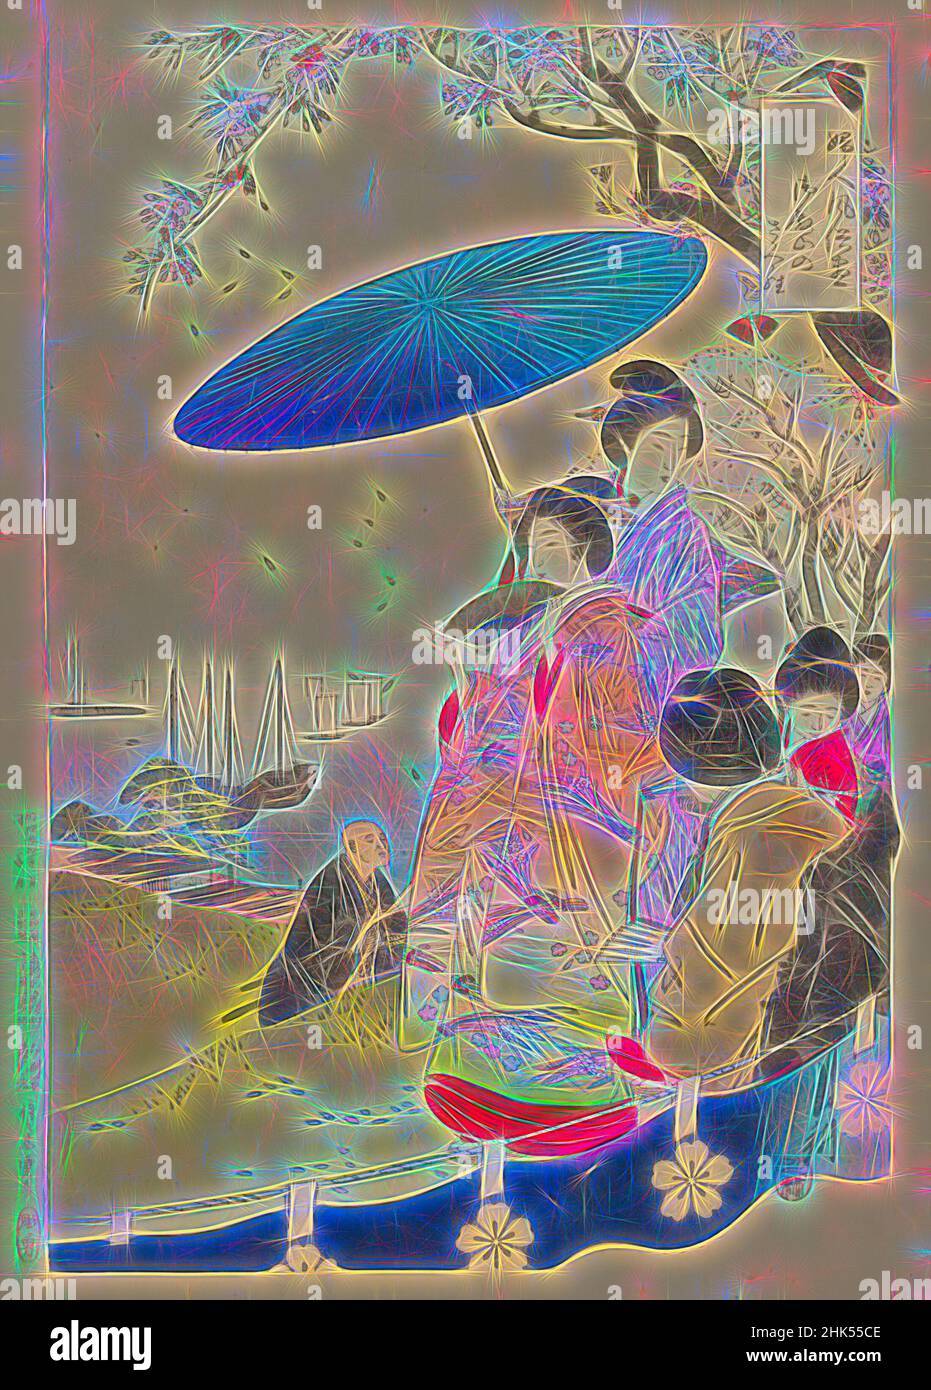 Inspiré par les cerisiers en fleurs de Goten-yama, de la série un assortiment de la douane féminine, Ogata Gekko, japonais, 1859-1920, impression de blocs de bois couleur sur papier, Japon, 1891, période Meiji, 14 1/2 x 10 po, 36,8 x 25,4 cm, baie, fleurs, bateaux, ventilateur, femme beauté, kimono, femmes, lavande, loisirs, Repensé par Artotop. L'art classique réinventé avec une touche moderne. Conception de lumière chaleureuse et gaie, de luminosité et de rayonnement de lumière. La photographie s'inspire du surréalisme et du futurisme, embrassant l'énergie dynamique de la technologie moderne, du mouvement, de la vitesse et révolutionne la culture Banque D'Images